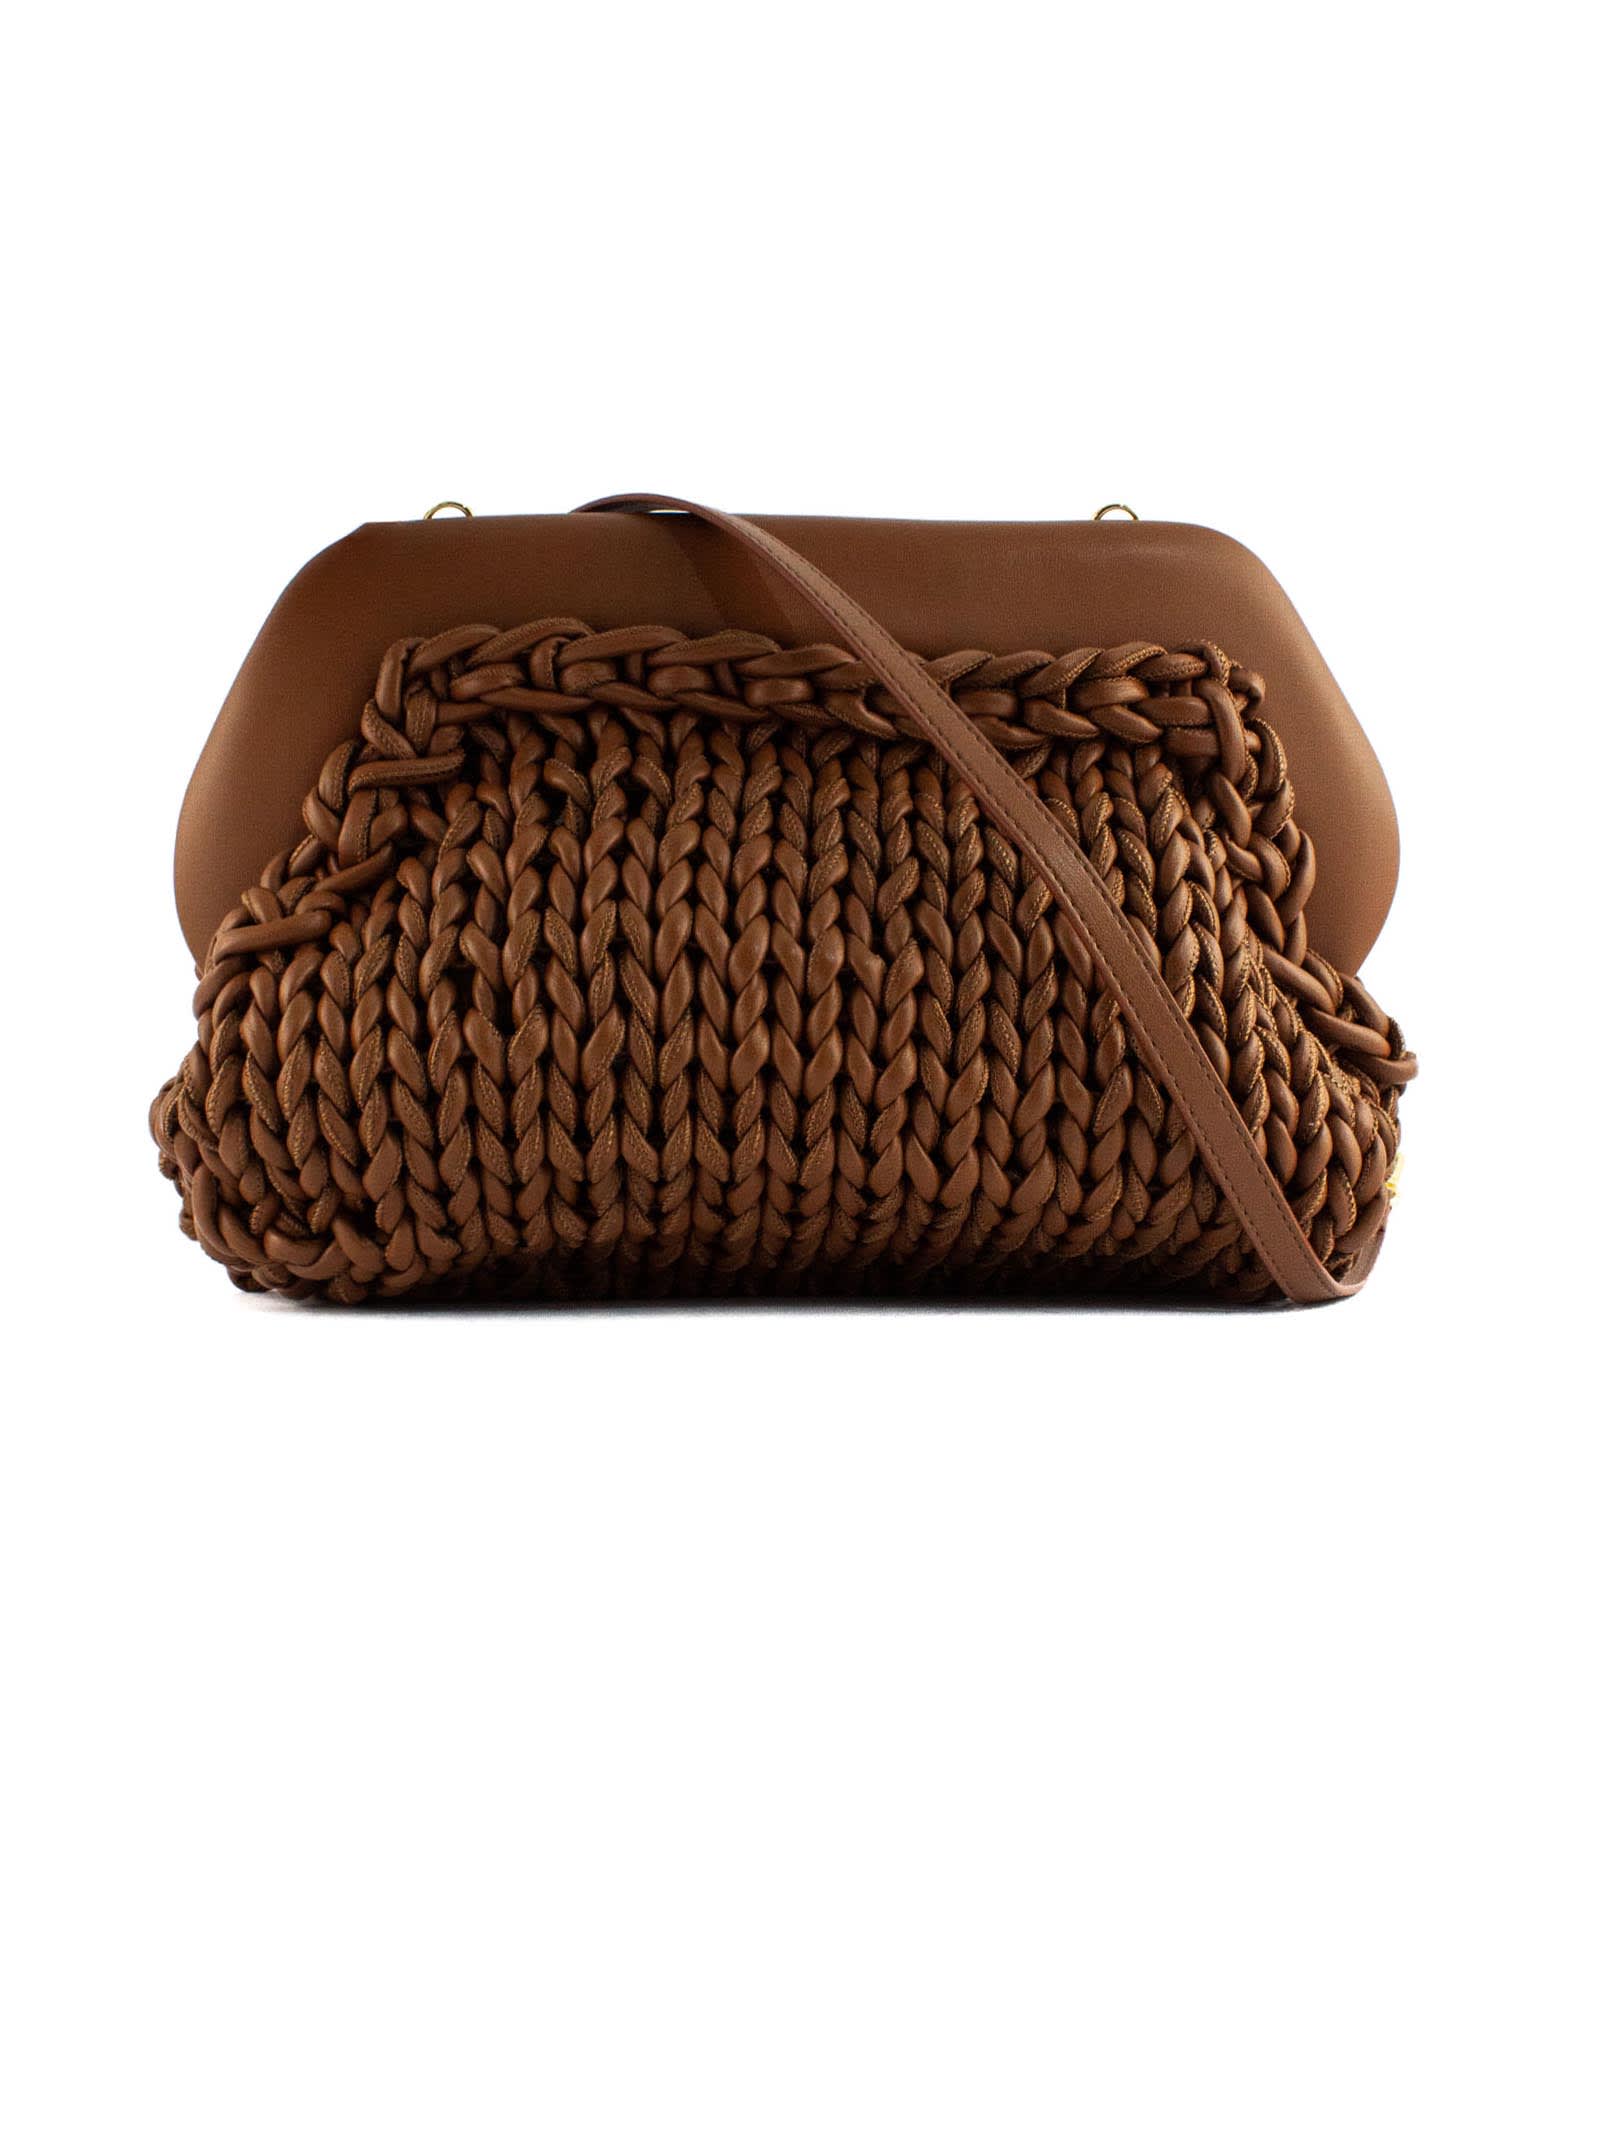 THEMOIRè Bios Knitted Brown Clutch Bag